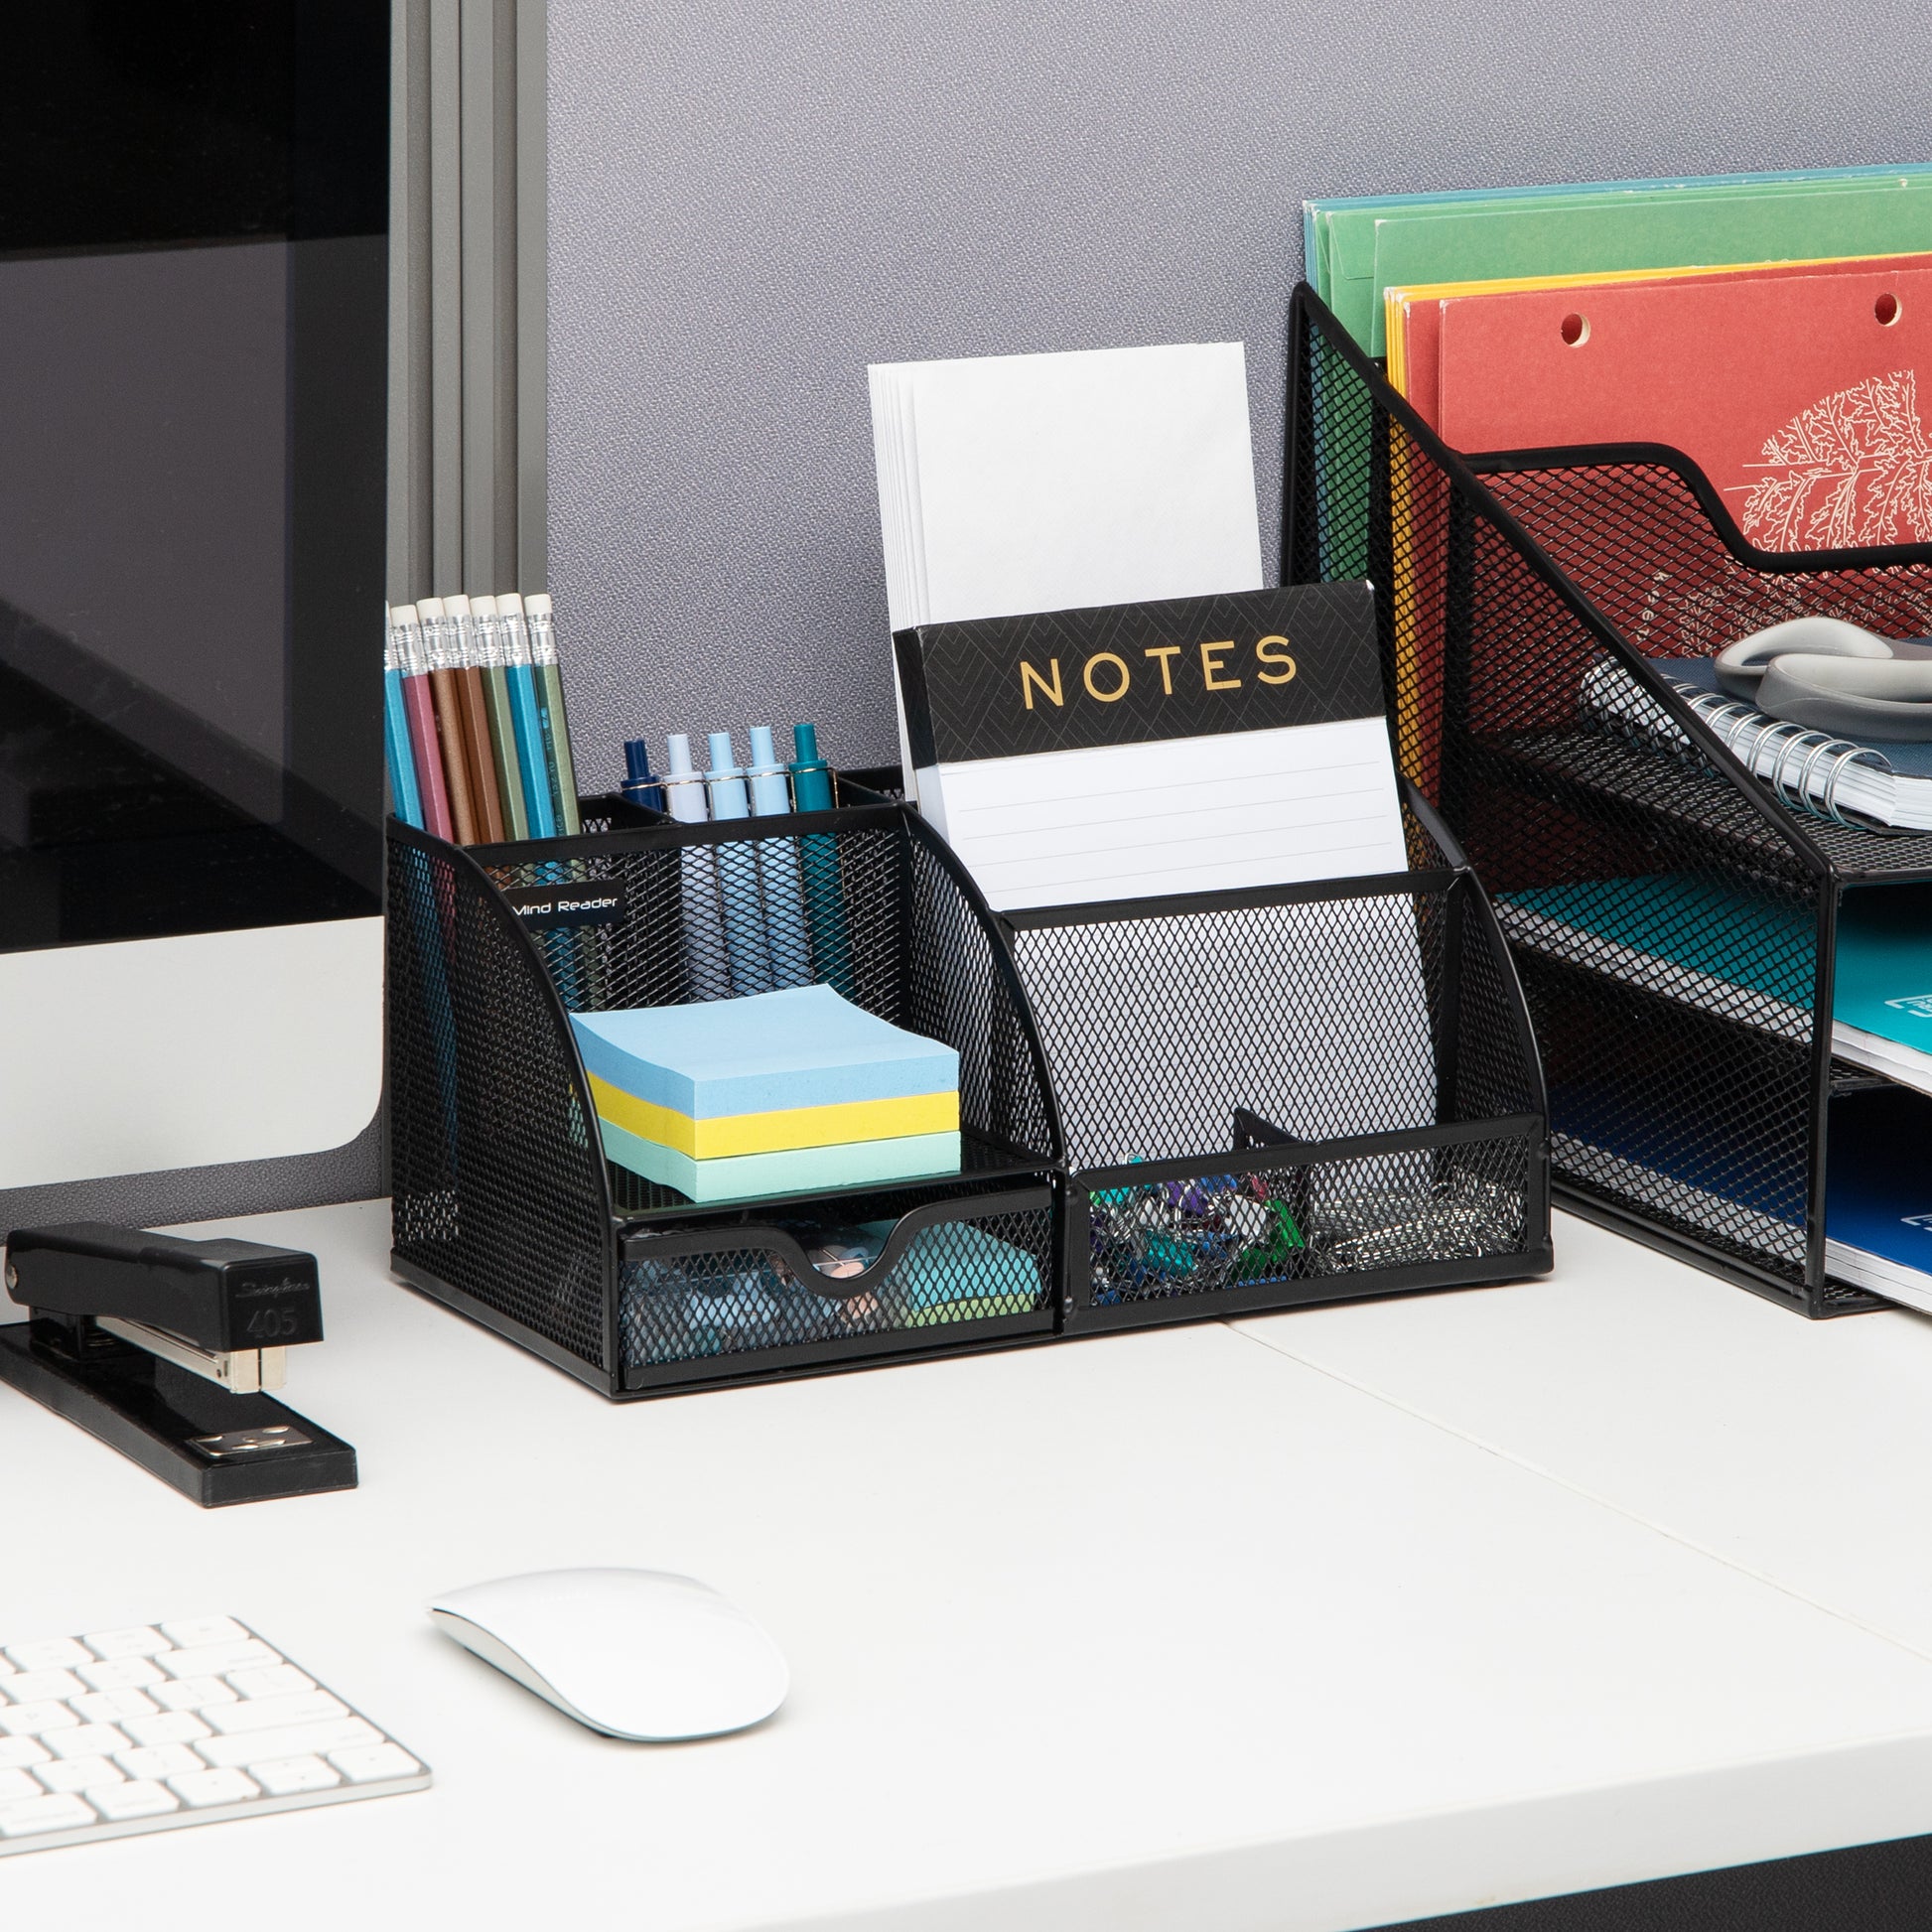 Mind Reader Desk Organizer, Pencil Cup Organizer, Office Supplies